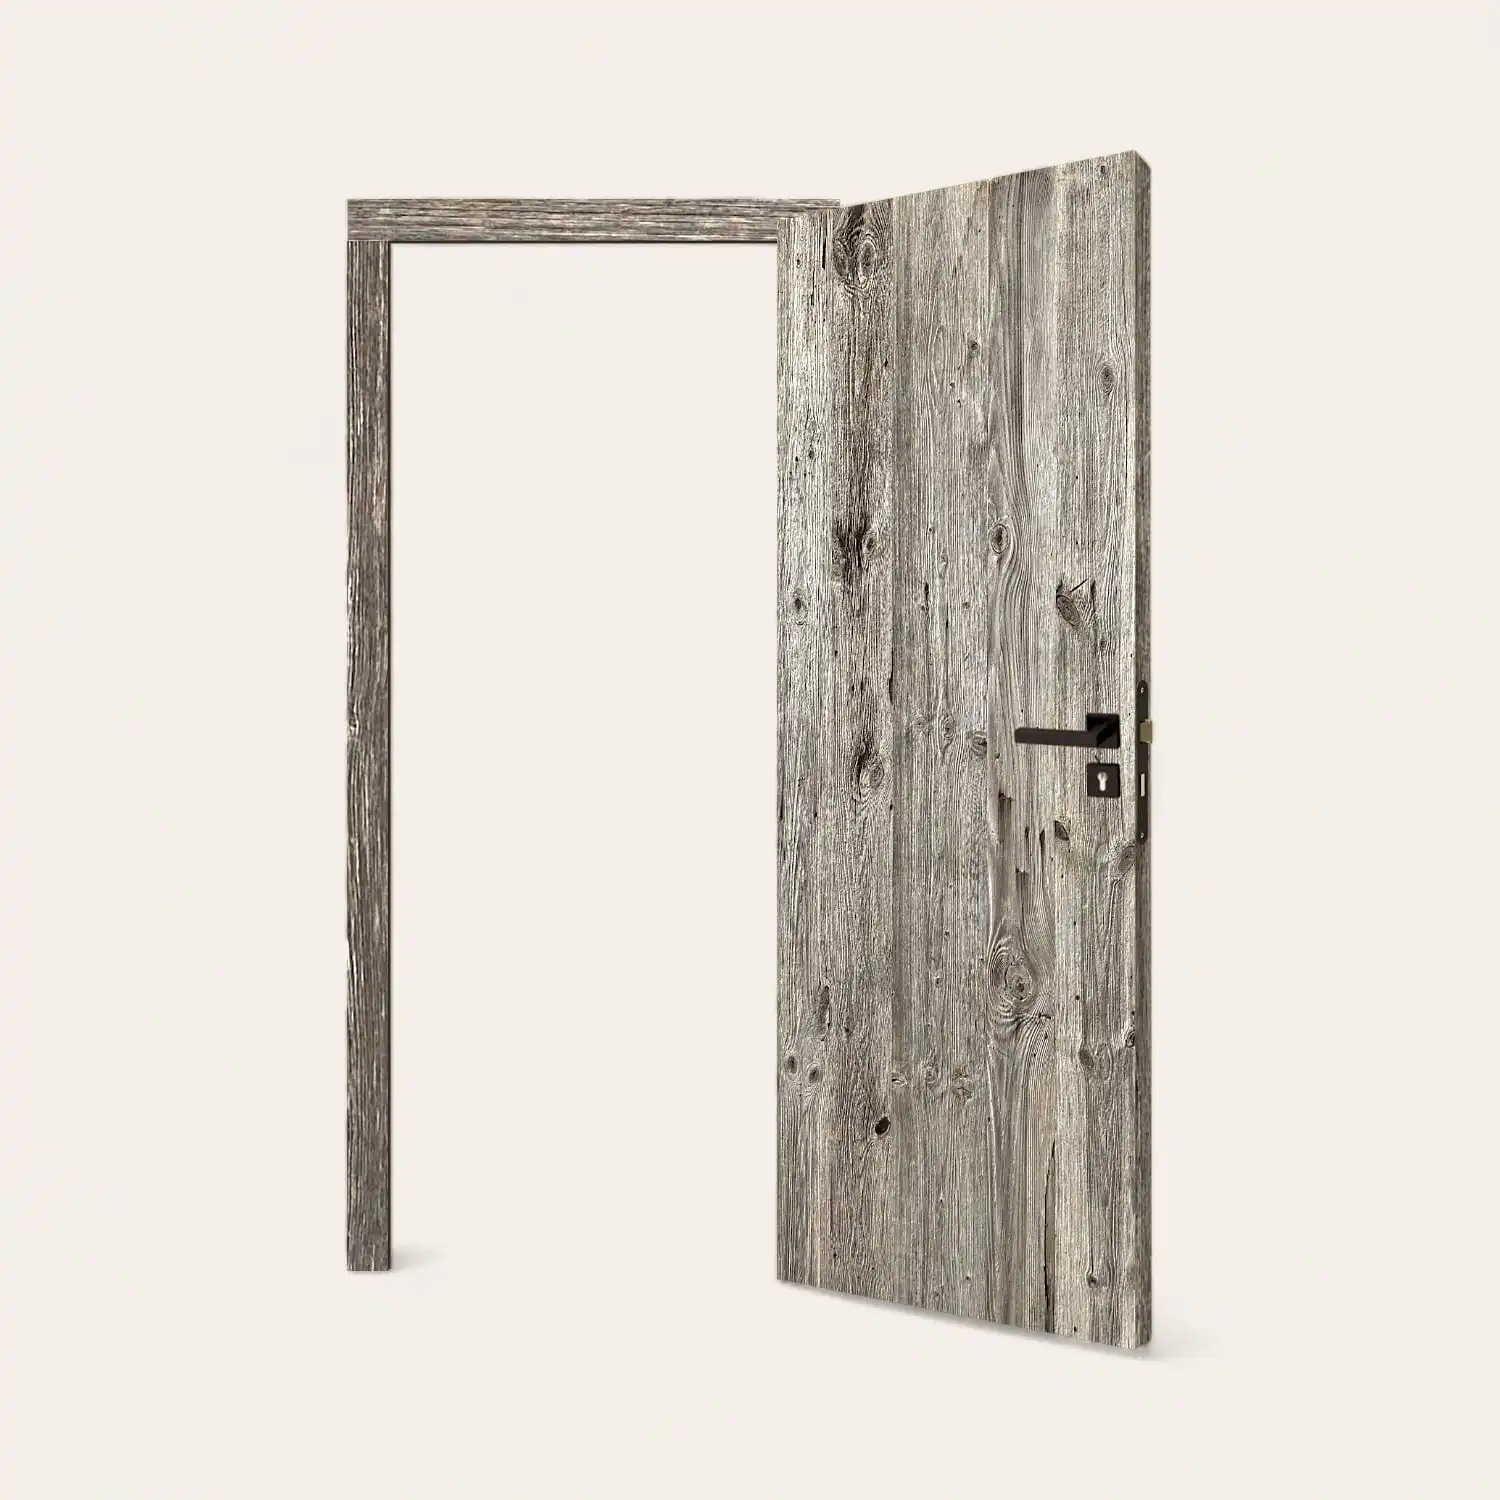  Une porte en bois rustique ouverte sur fond blanc. 